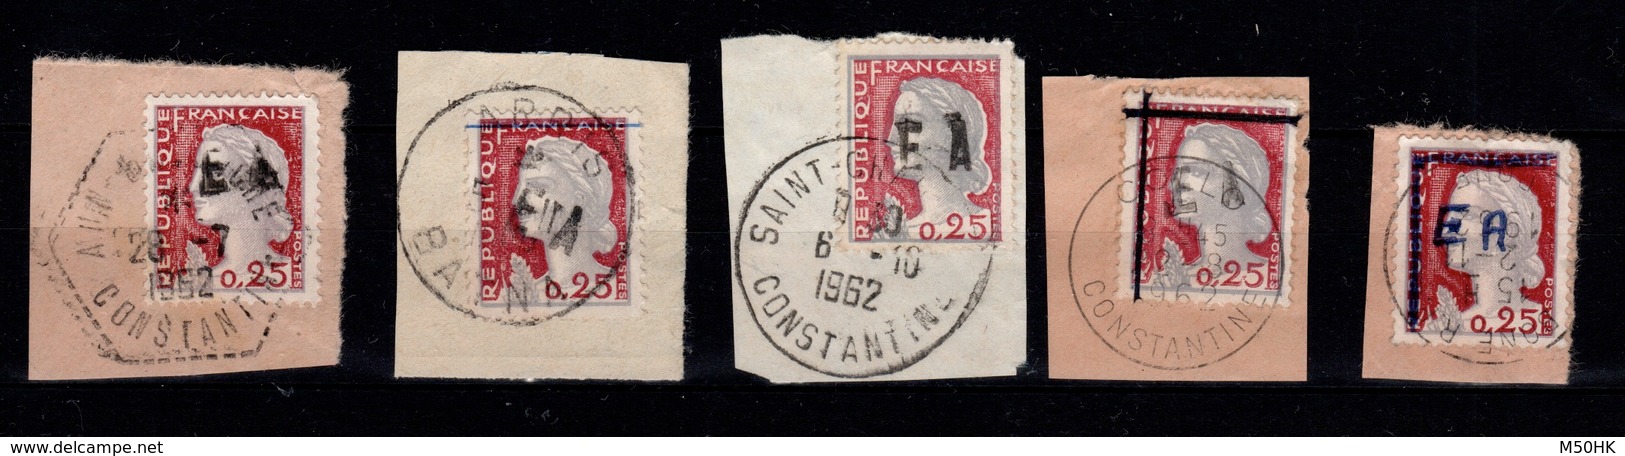 Algerie - Collection (14 scans) de 69 timbres surchargés EA Etat Algerien oblitérés sur fragments